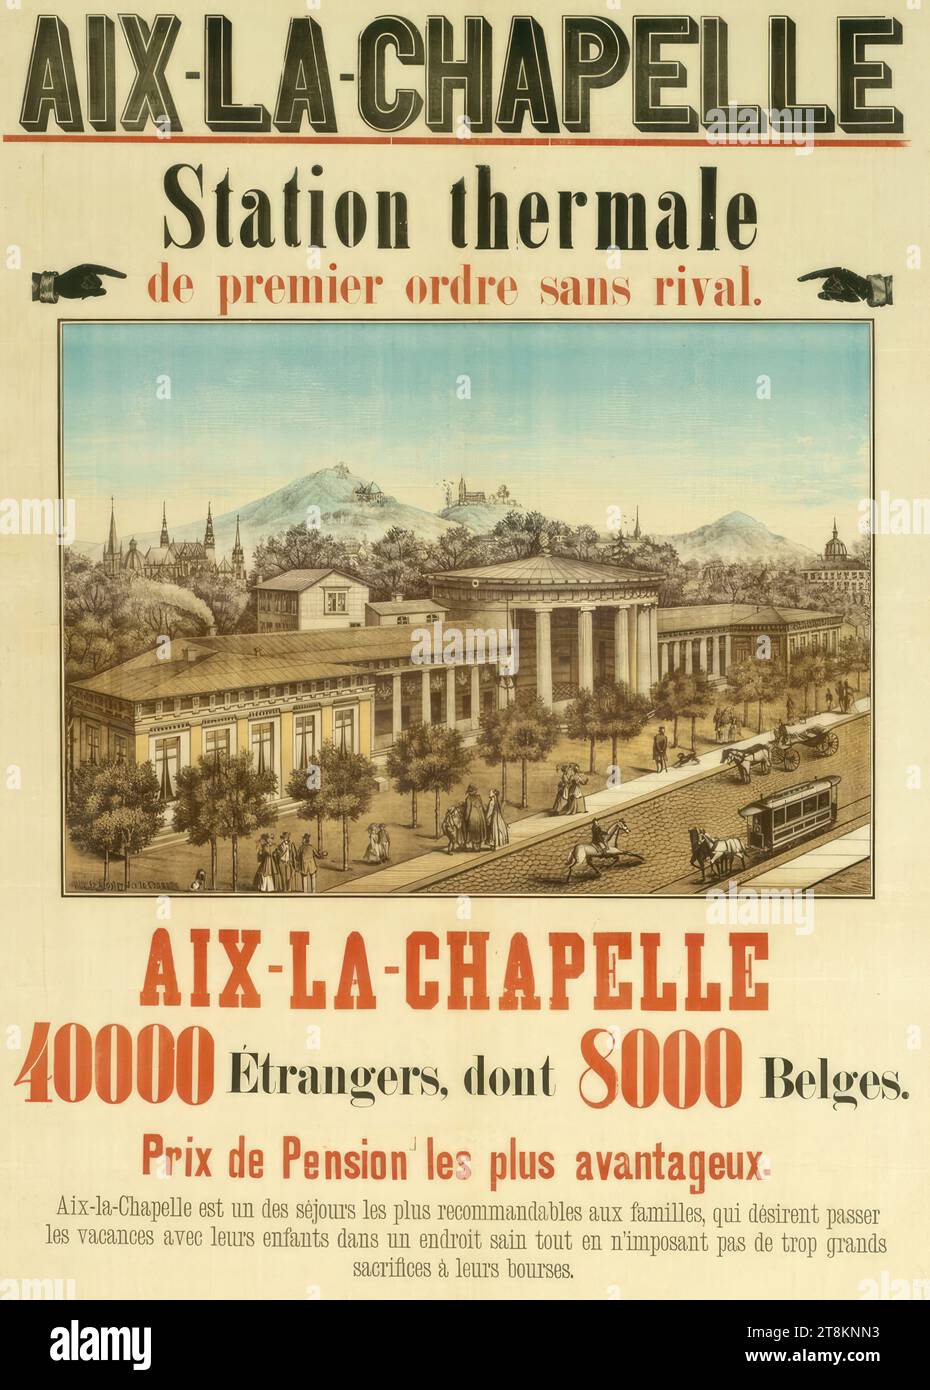 AIX LA CHAPELLE; Station thermale de premier ordre sans rival., Anonymous, around 1890, print, color lithograph, sheet: 860 mm x 680 mm Stock Photo